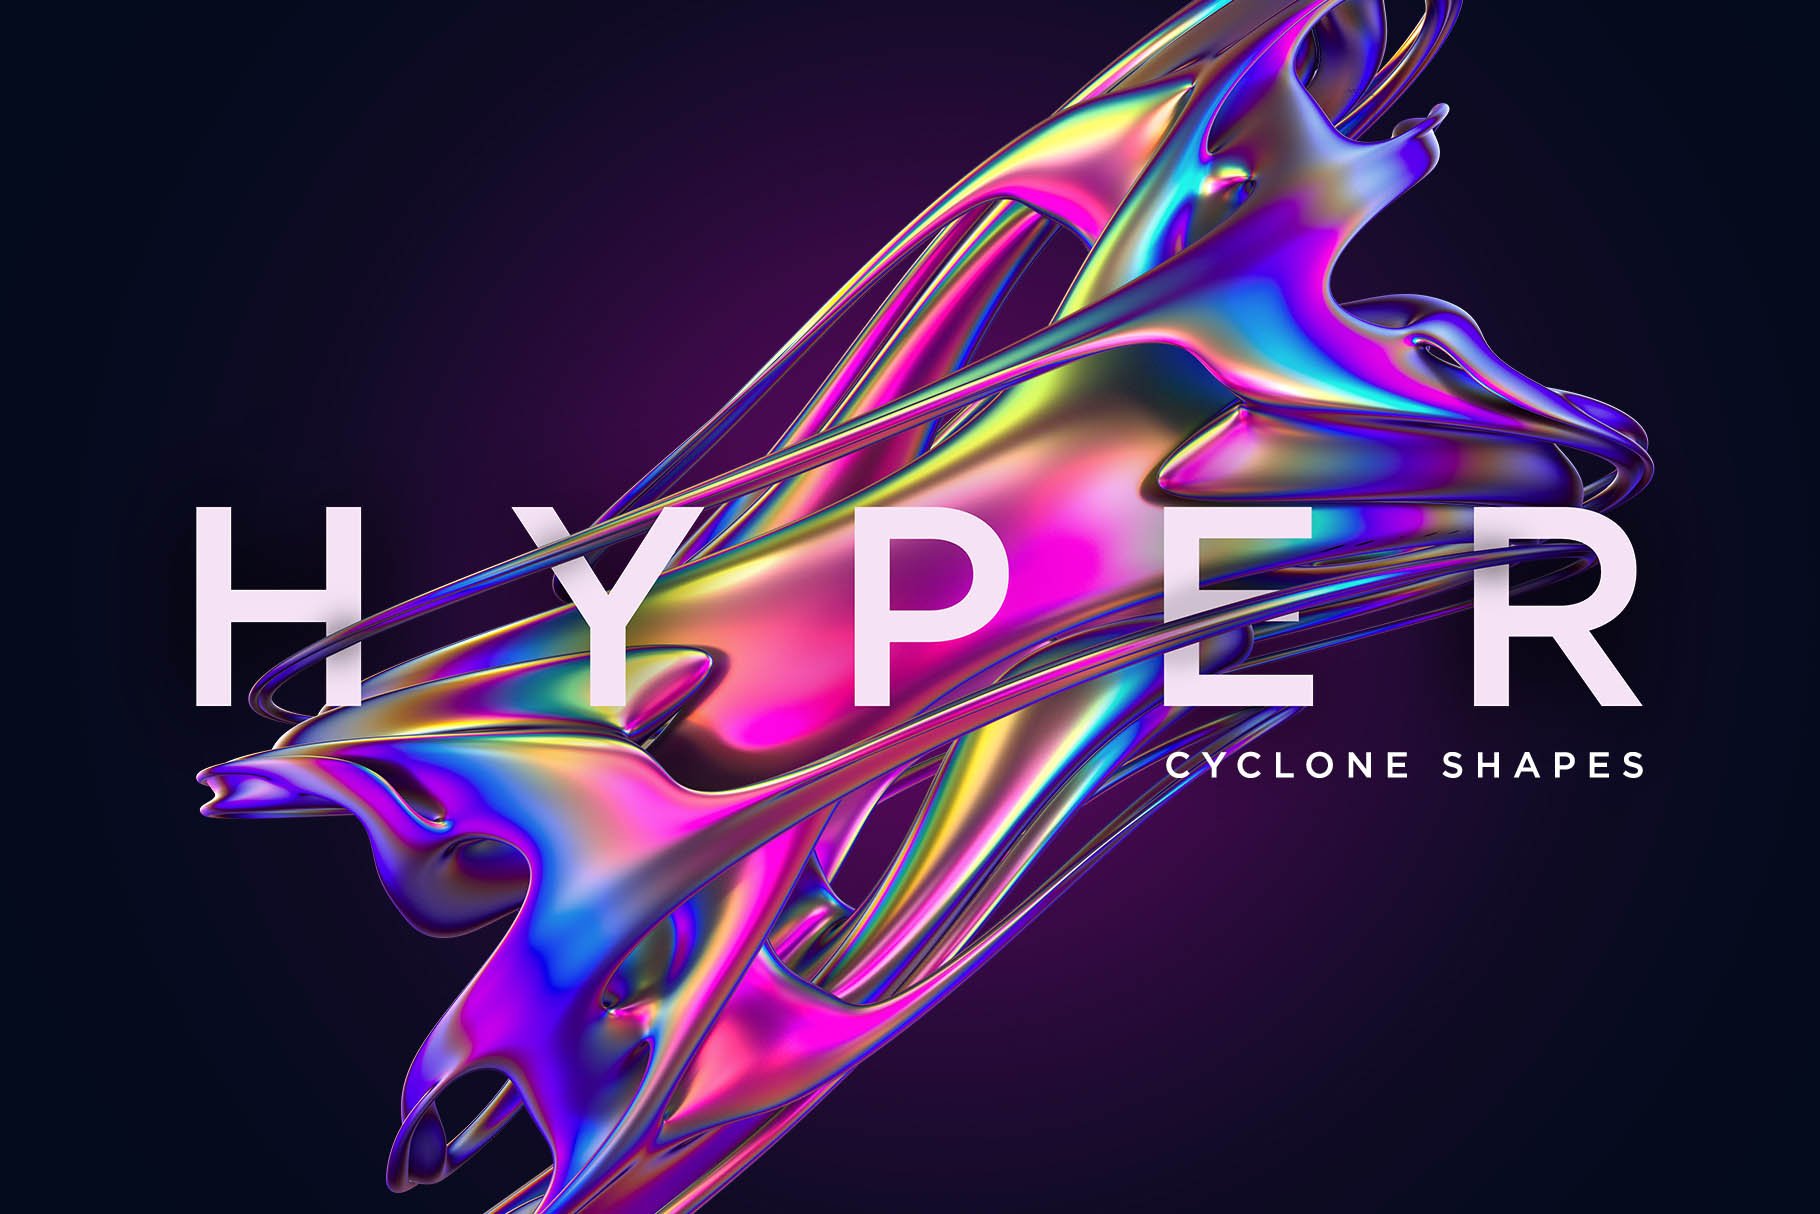 24+高级全息霓虹抽象旋风扭曲形状图案 Hyper Abstract Cyclone Shapes 图片素材 第1张